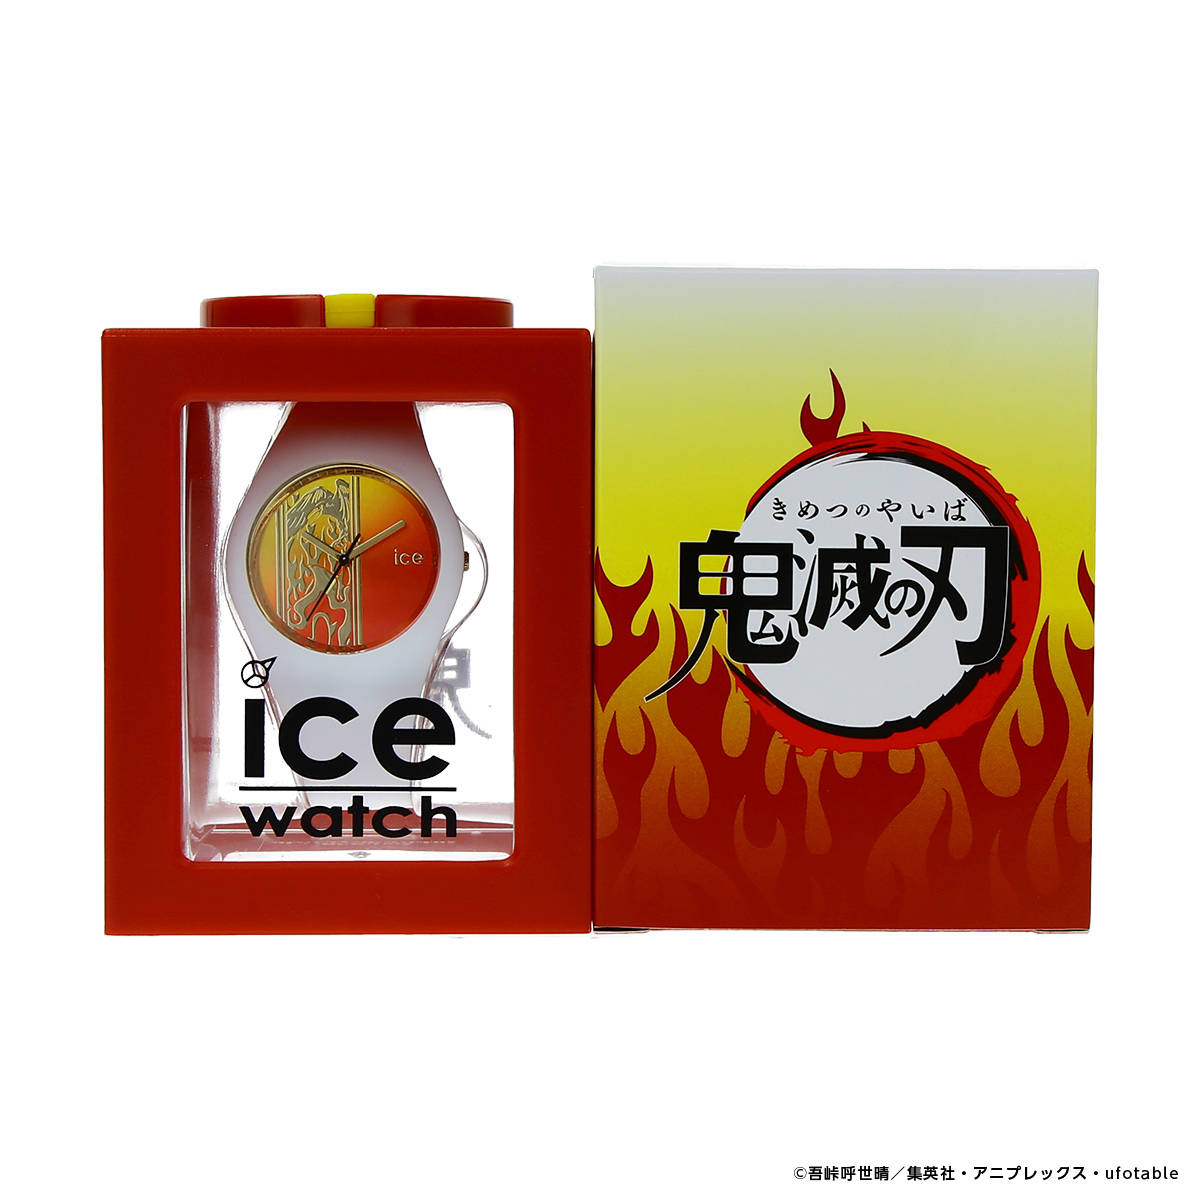 05.「鬼滅の刃」× ICE-WATCH コラボレーションウォッチ 煉獄杏寿郎 モデル  3